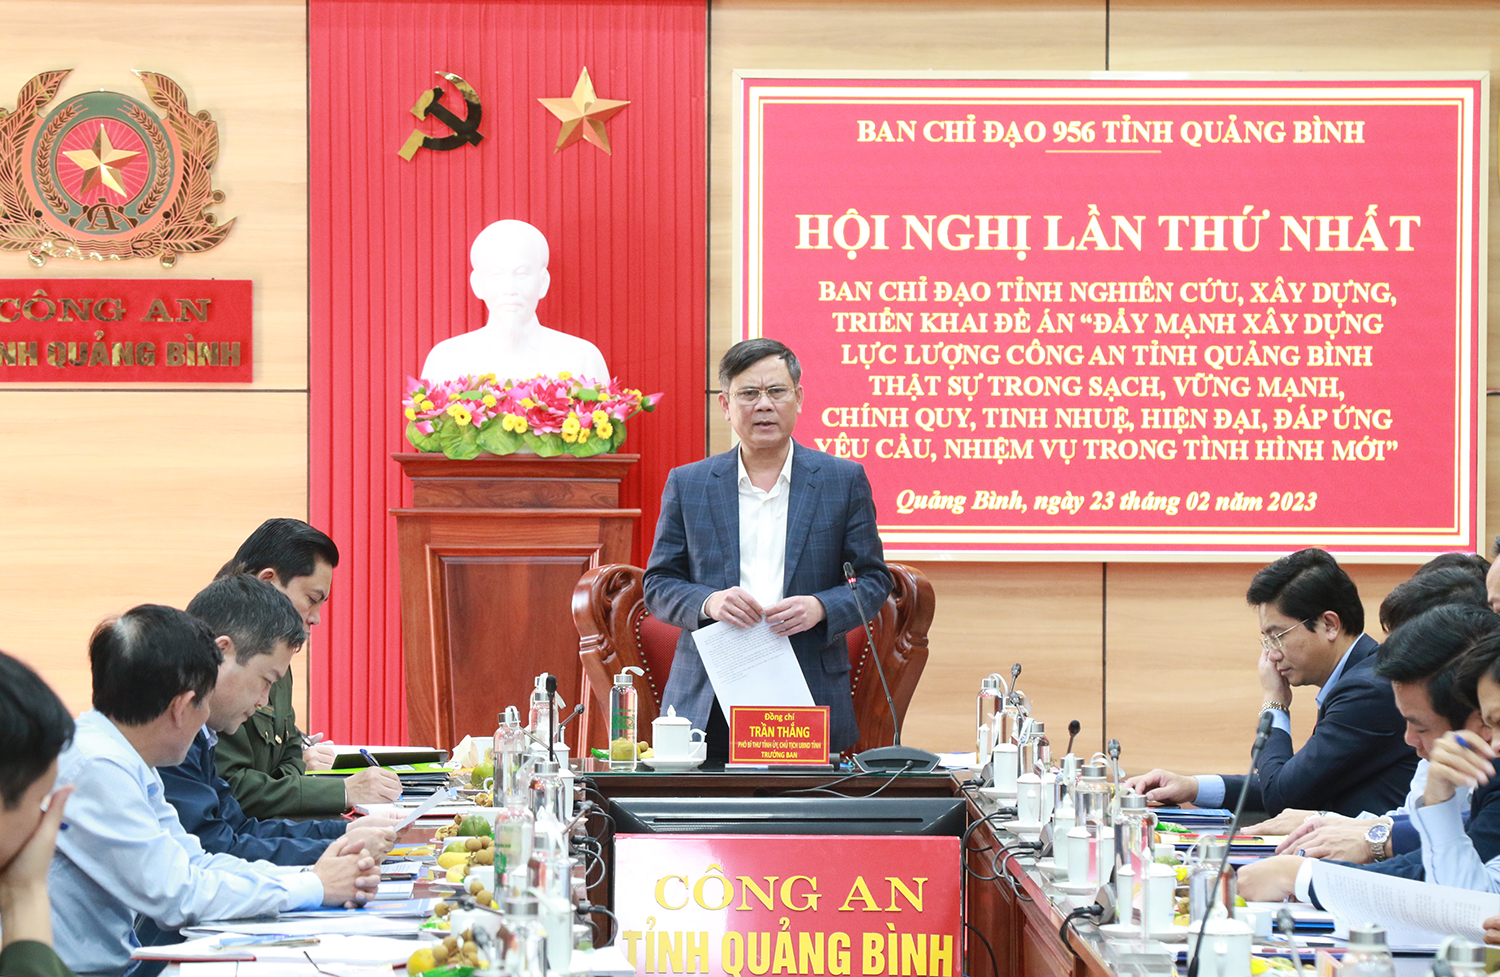 Đồng chí Trần Thắng, Phó Bí thư Tỉnh ủy, Chủ tịch UBND tỉnh, Trưởng Ban Chỉ đạo phát biểu chỉ đạo tại hội nghị.